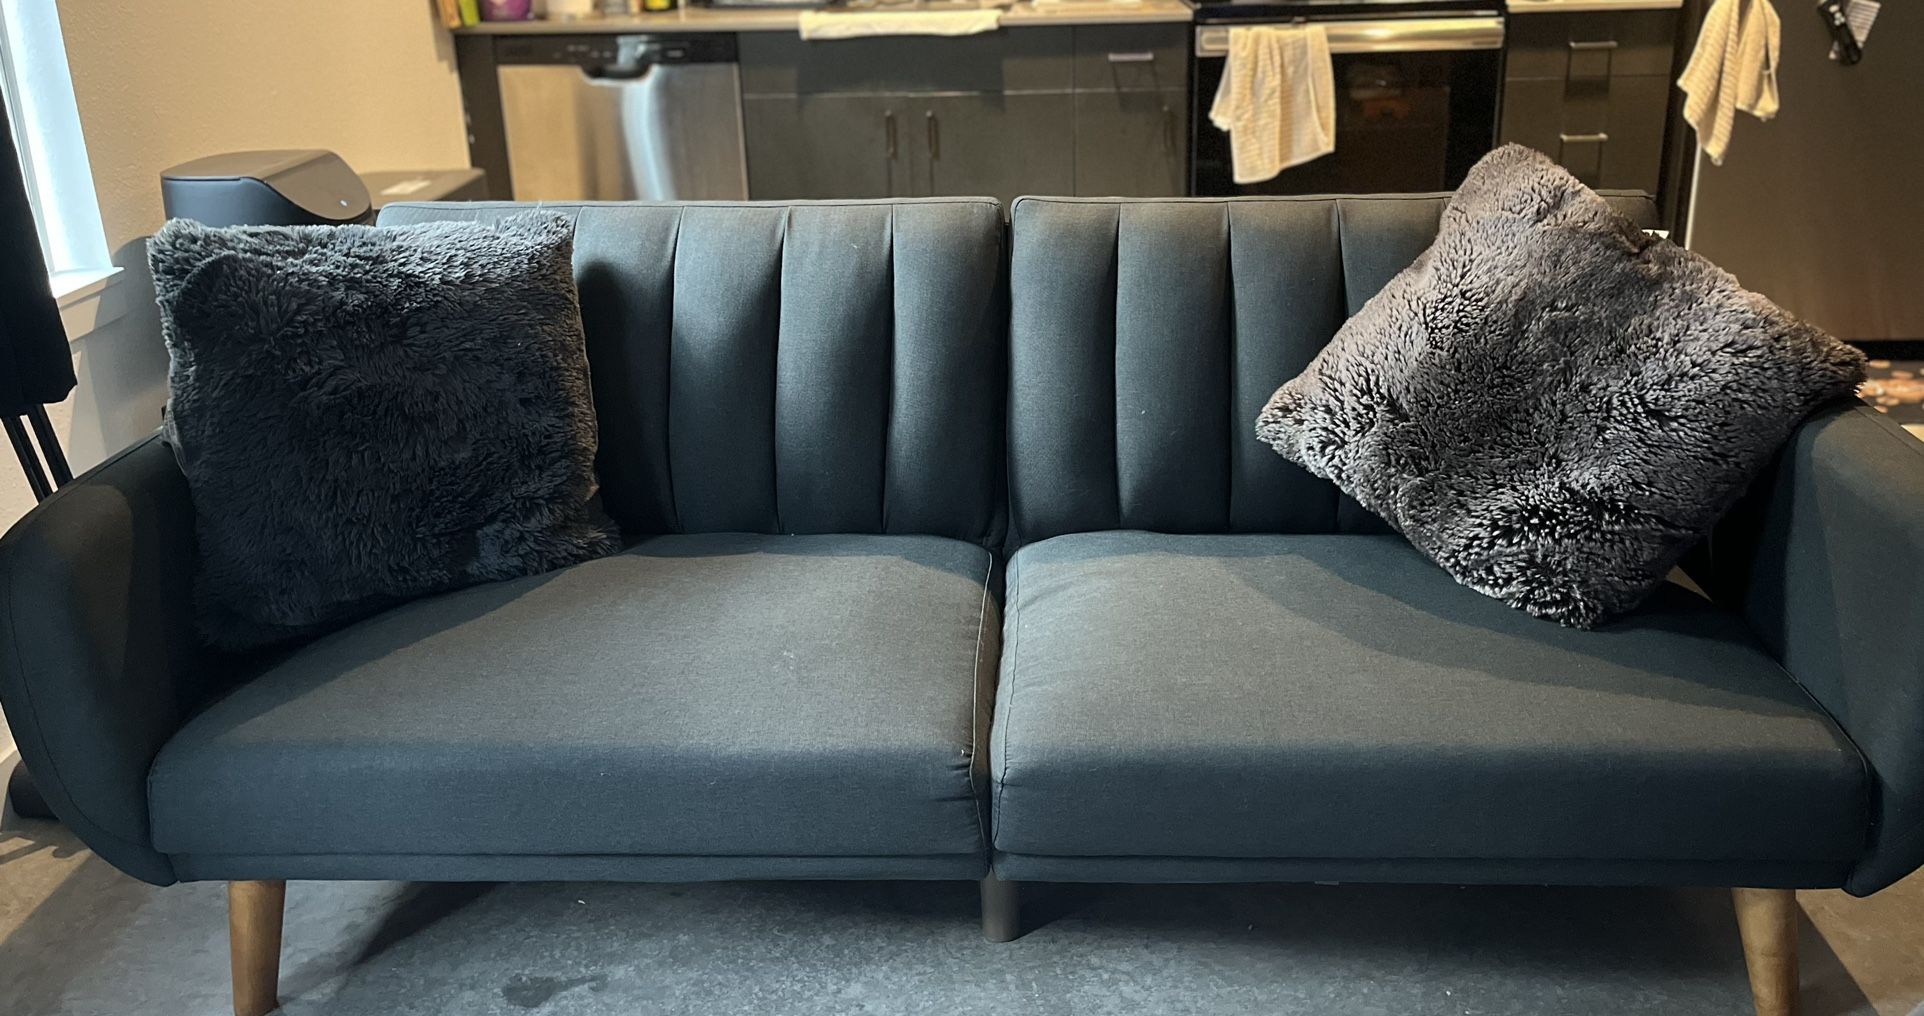 Novagratz Brittany Sofa Futon/Sofa/Couch  - Dark Grey Linen  